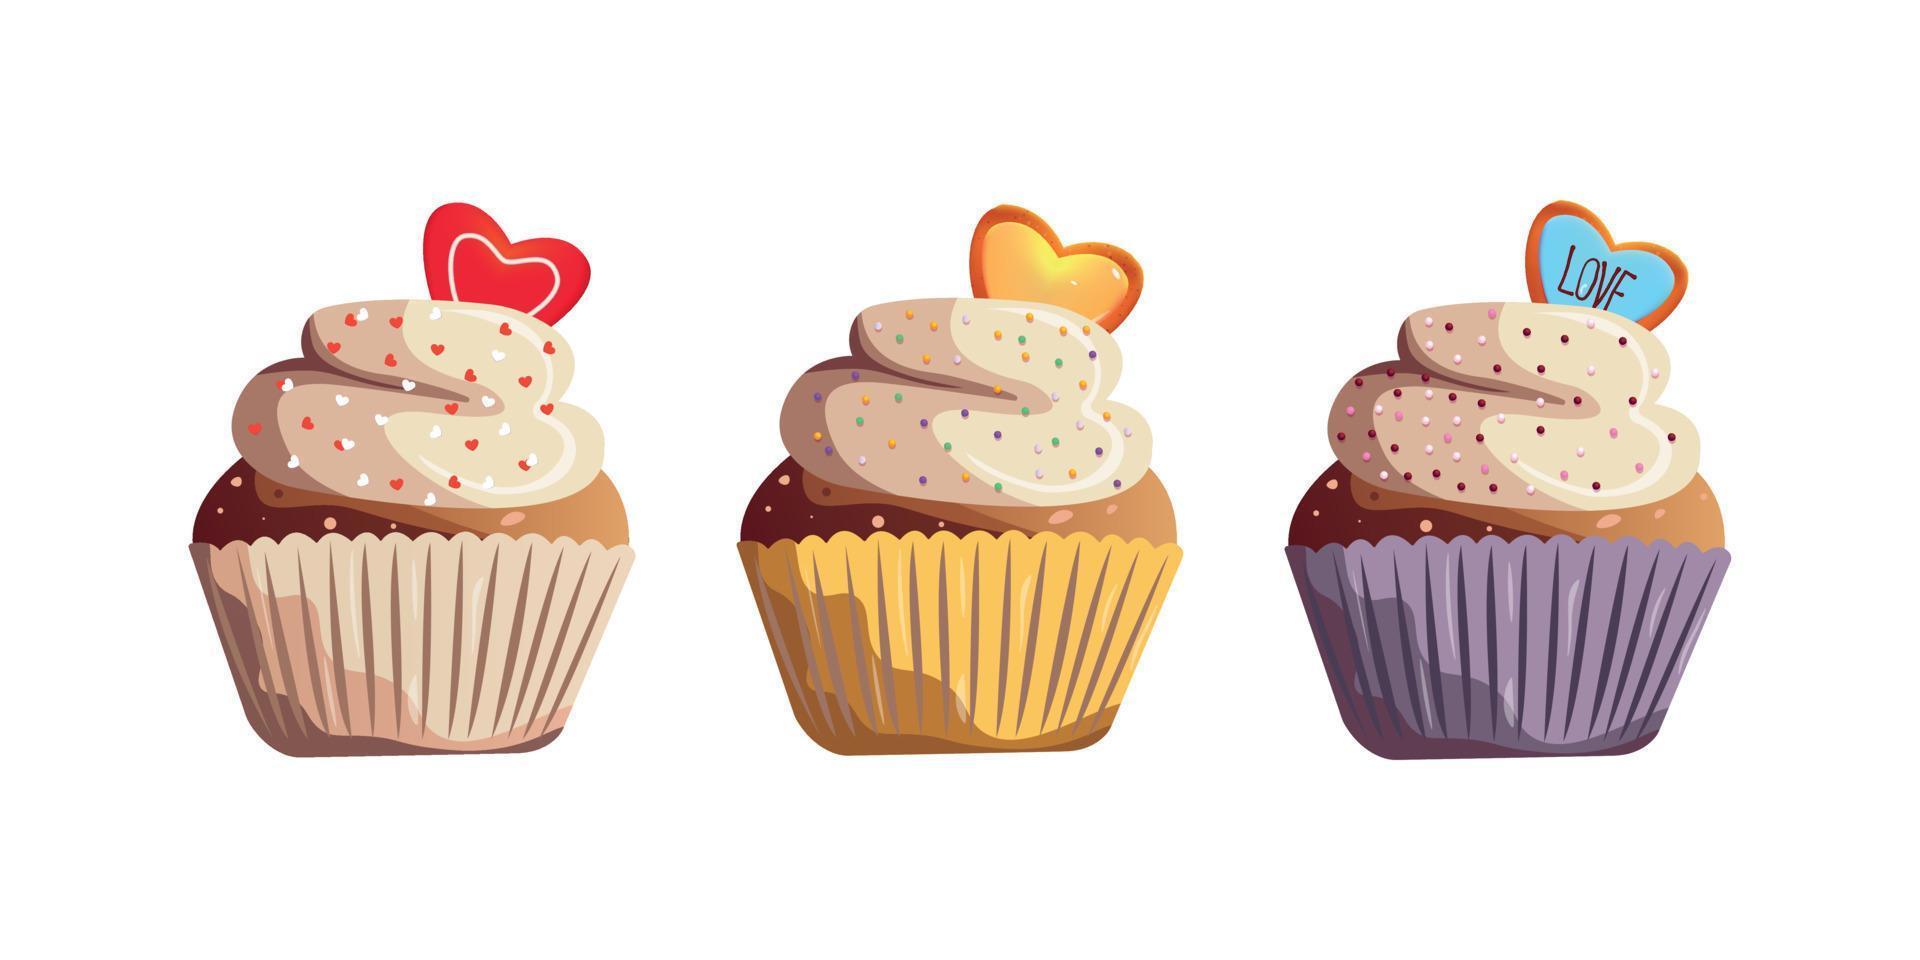 satz muffins cupcakes für den glücklichen valentinstag. romantik, liebeskonzept. isoliert auf weiß vektor